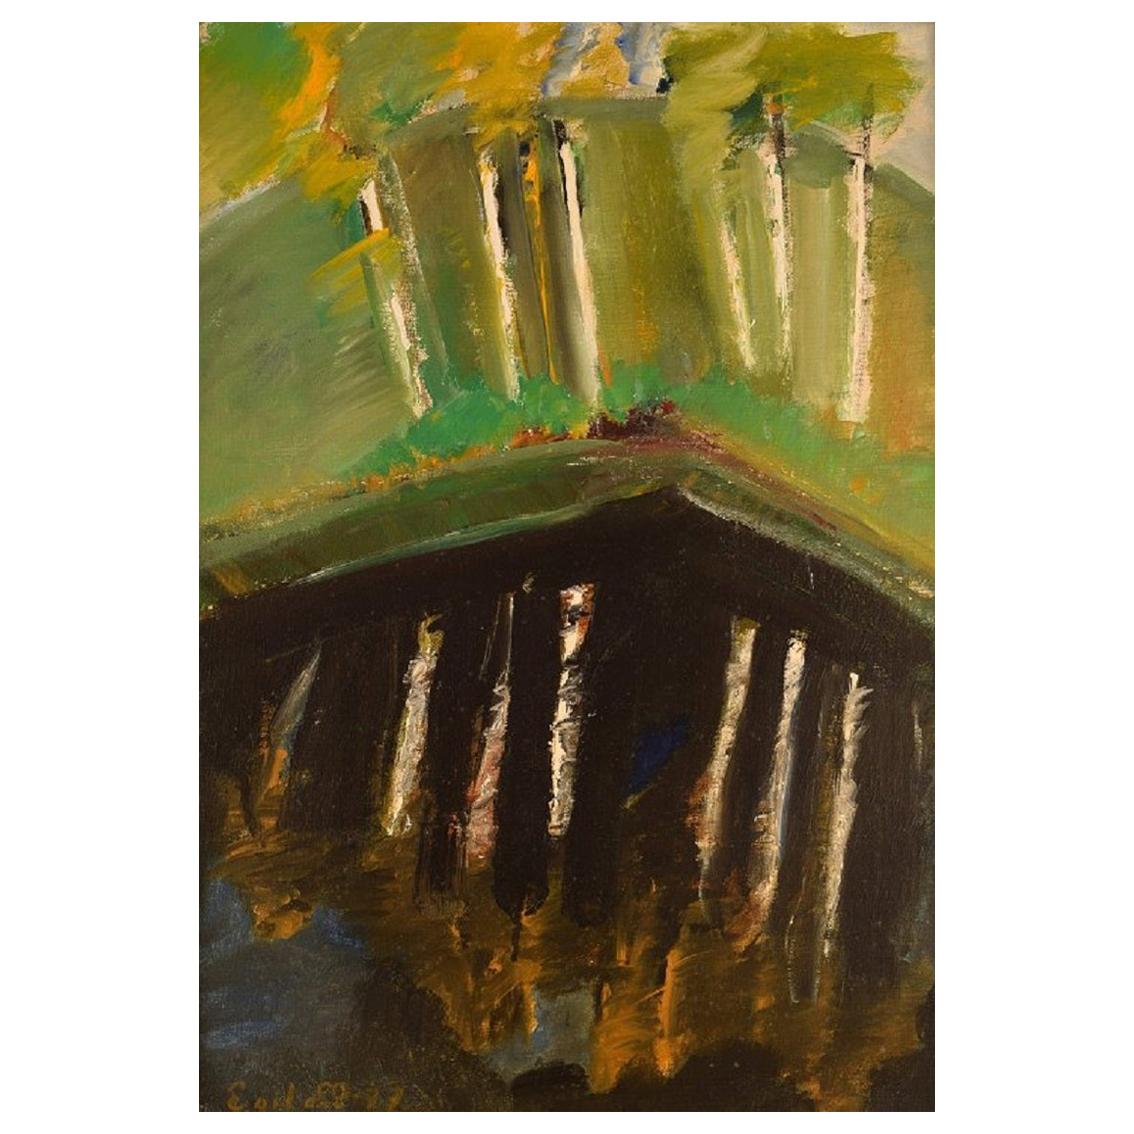 Egil Carlsson « B. 1920 », Suède, huile sur toile, paysage de parc moderniste, 1977